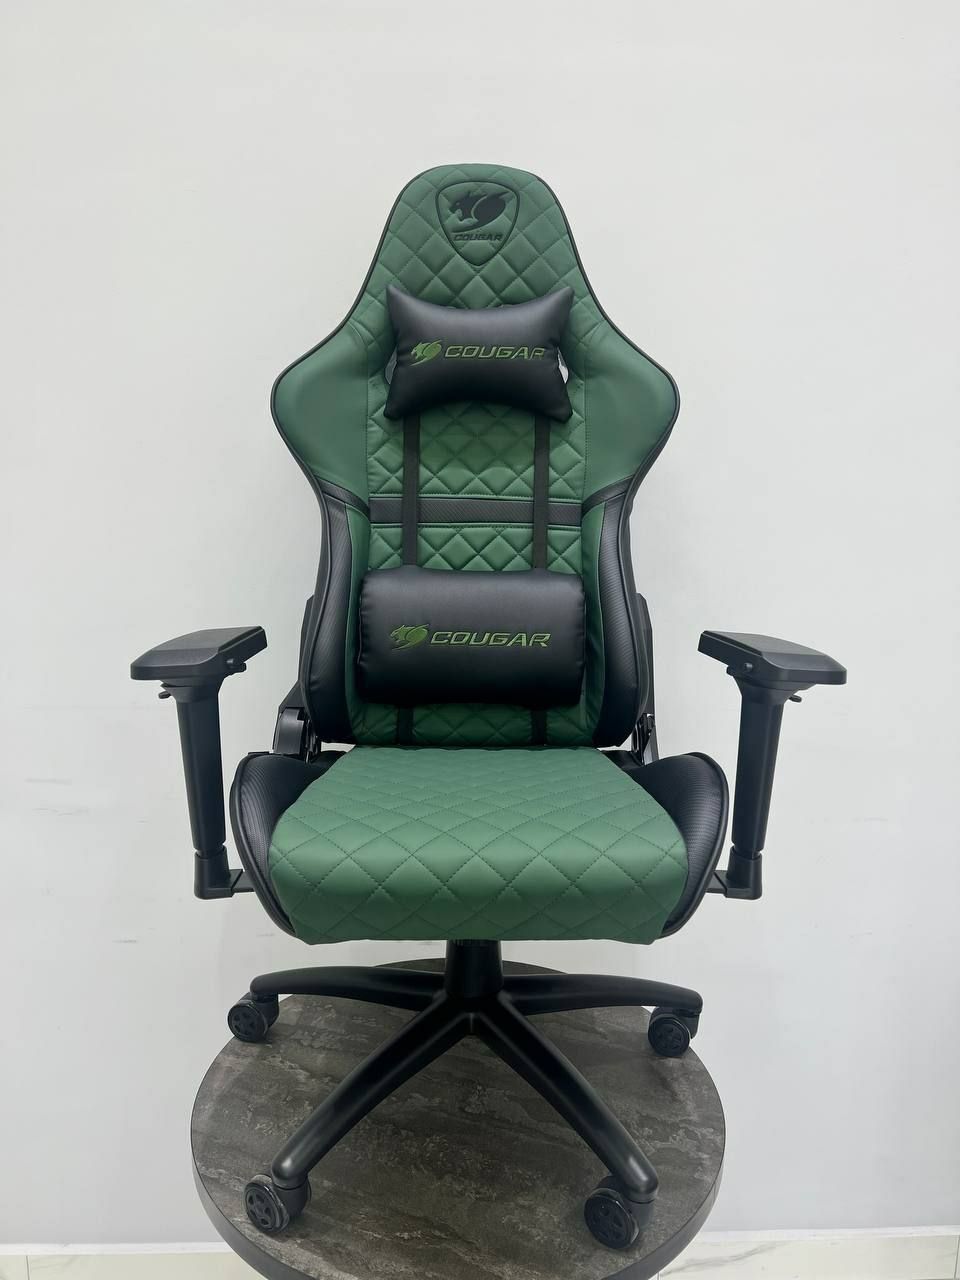 Геймерское кресло Cougar green 4 D спортивный игровые кресла со склада